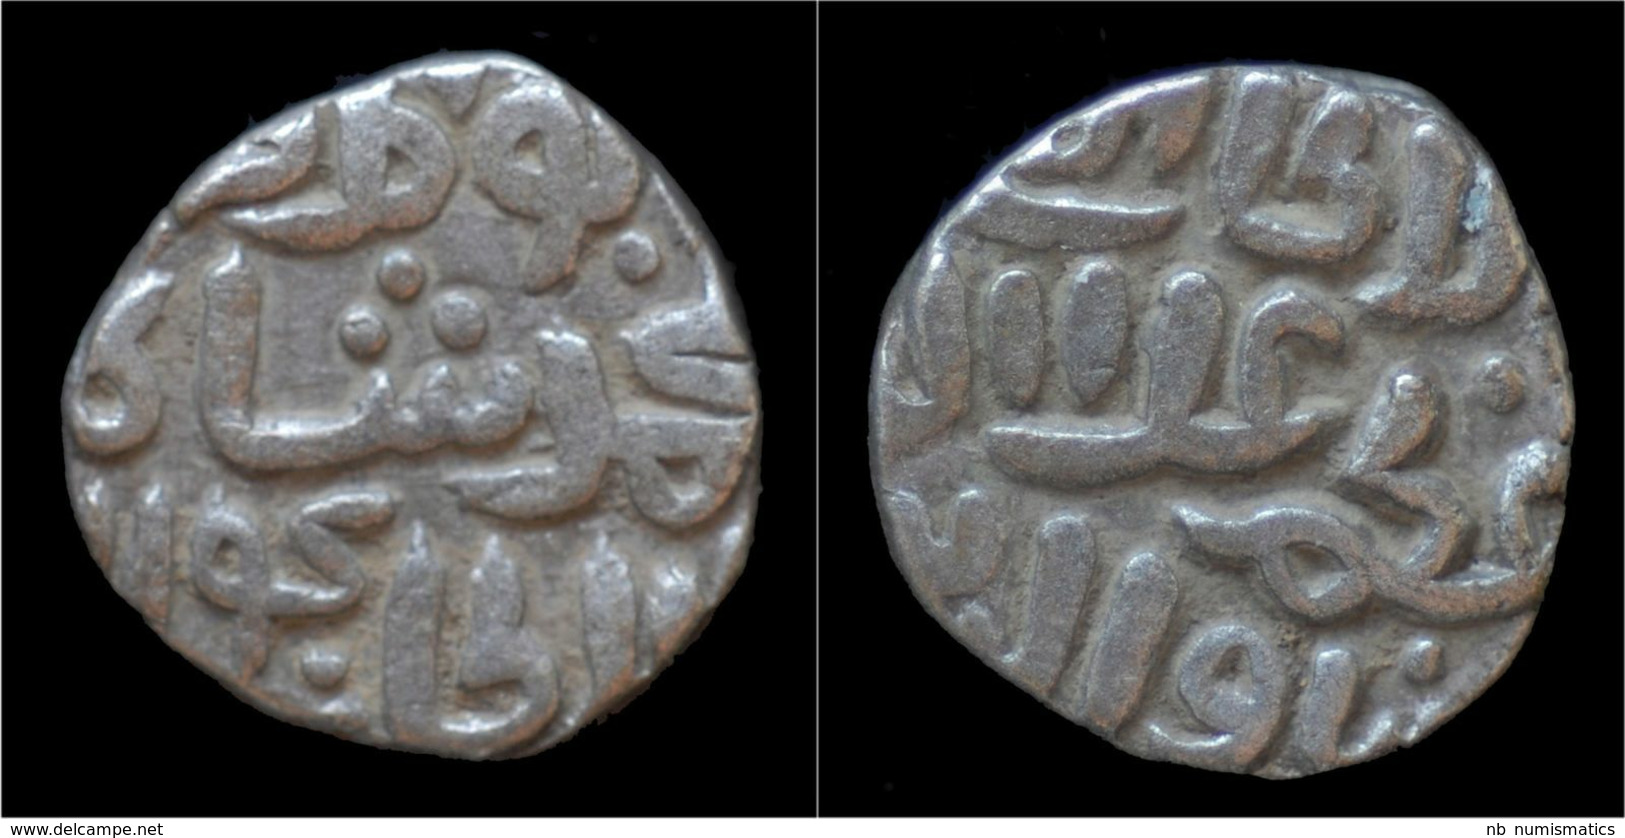 India Delhi Sultanats Ghiyath Al-Din AR Jital (four Gani) - Indisch